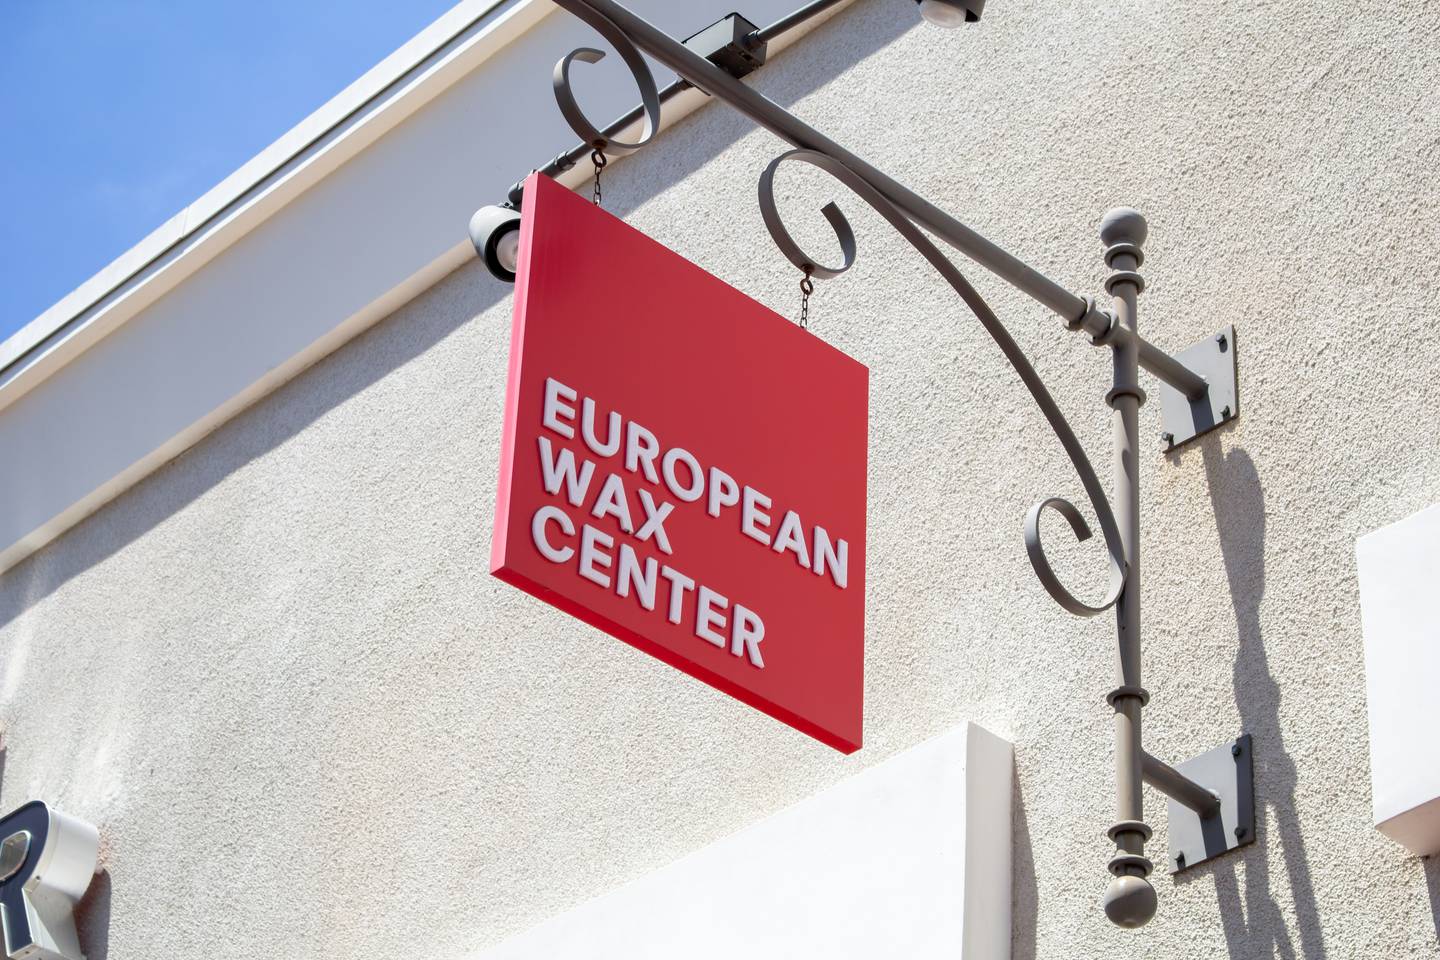 European Wax Center. Shutterstock.